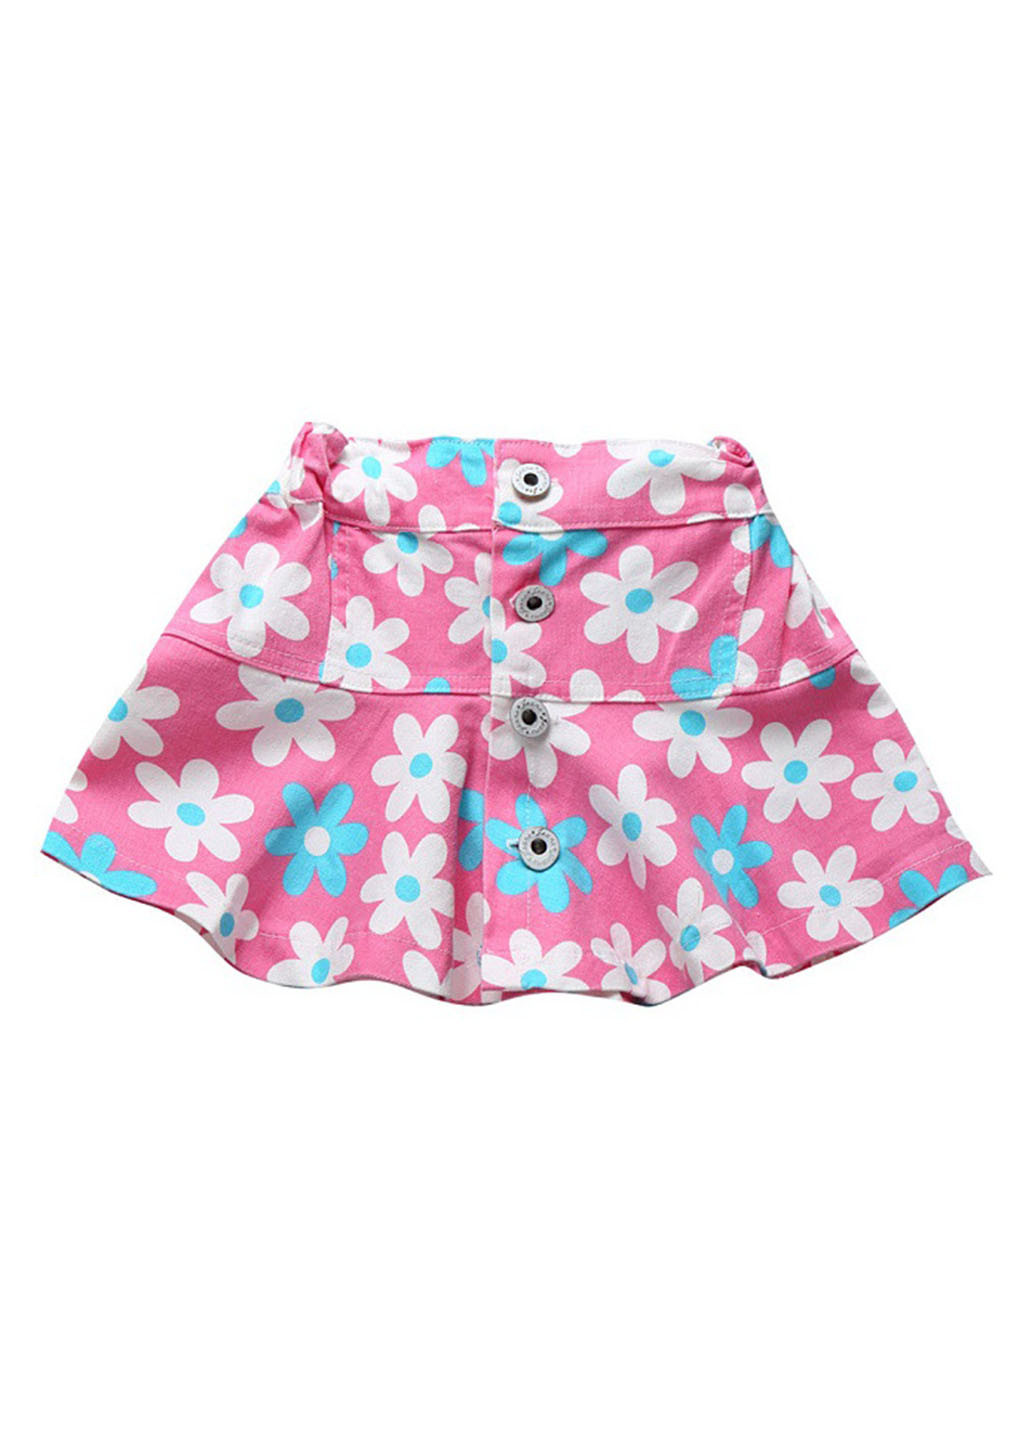 Розовая кэжуал цветочной расцветки юбка Best Kids мини